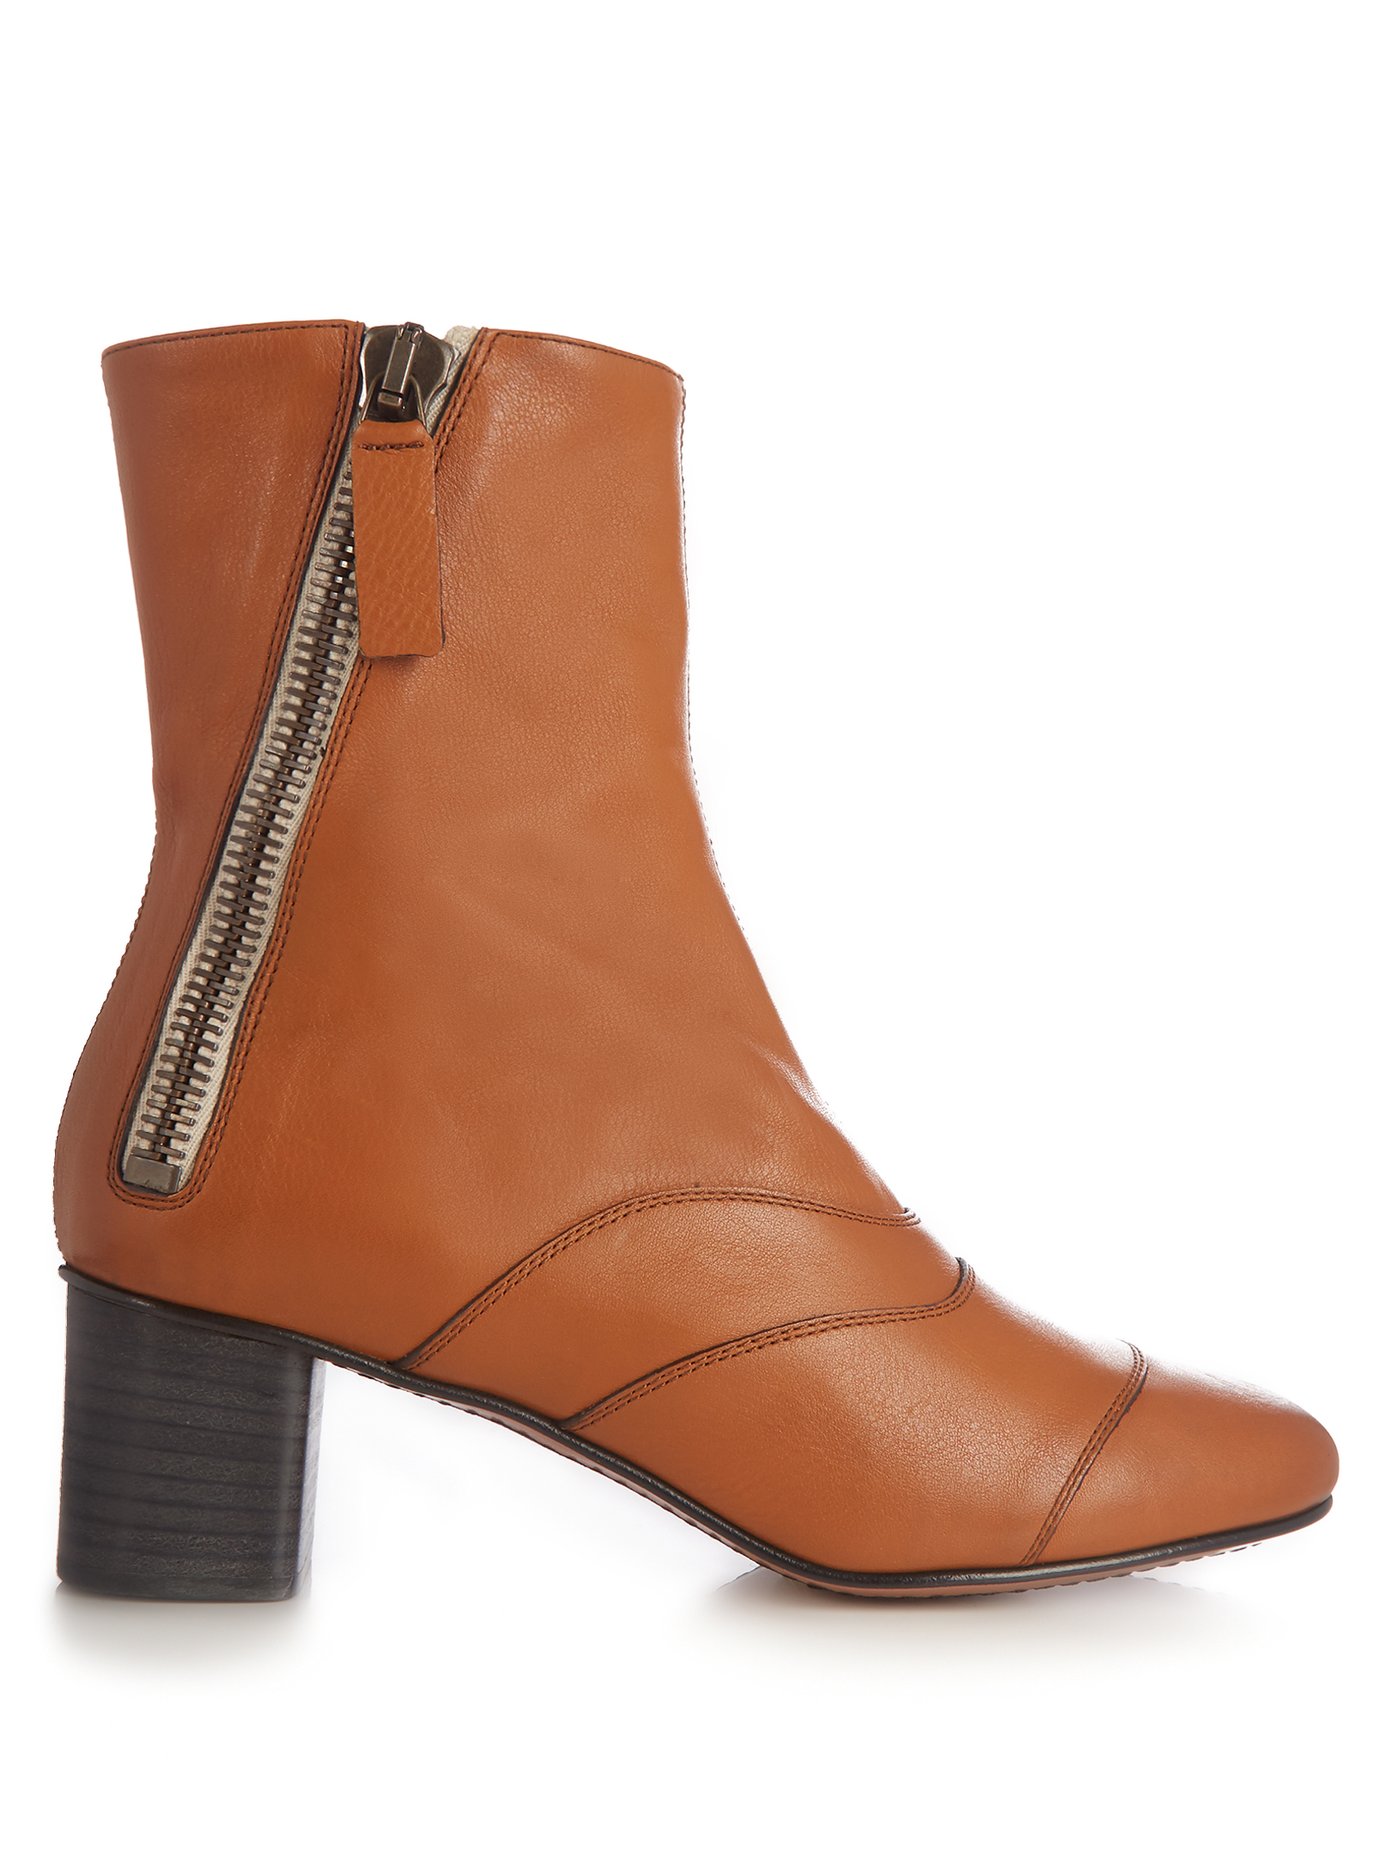 Lexie leather ankle boots | Chloé 